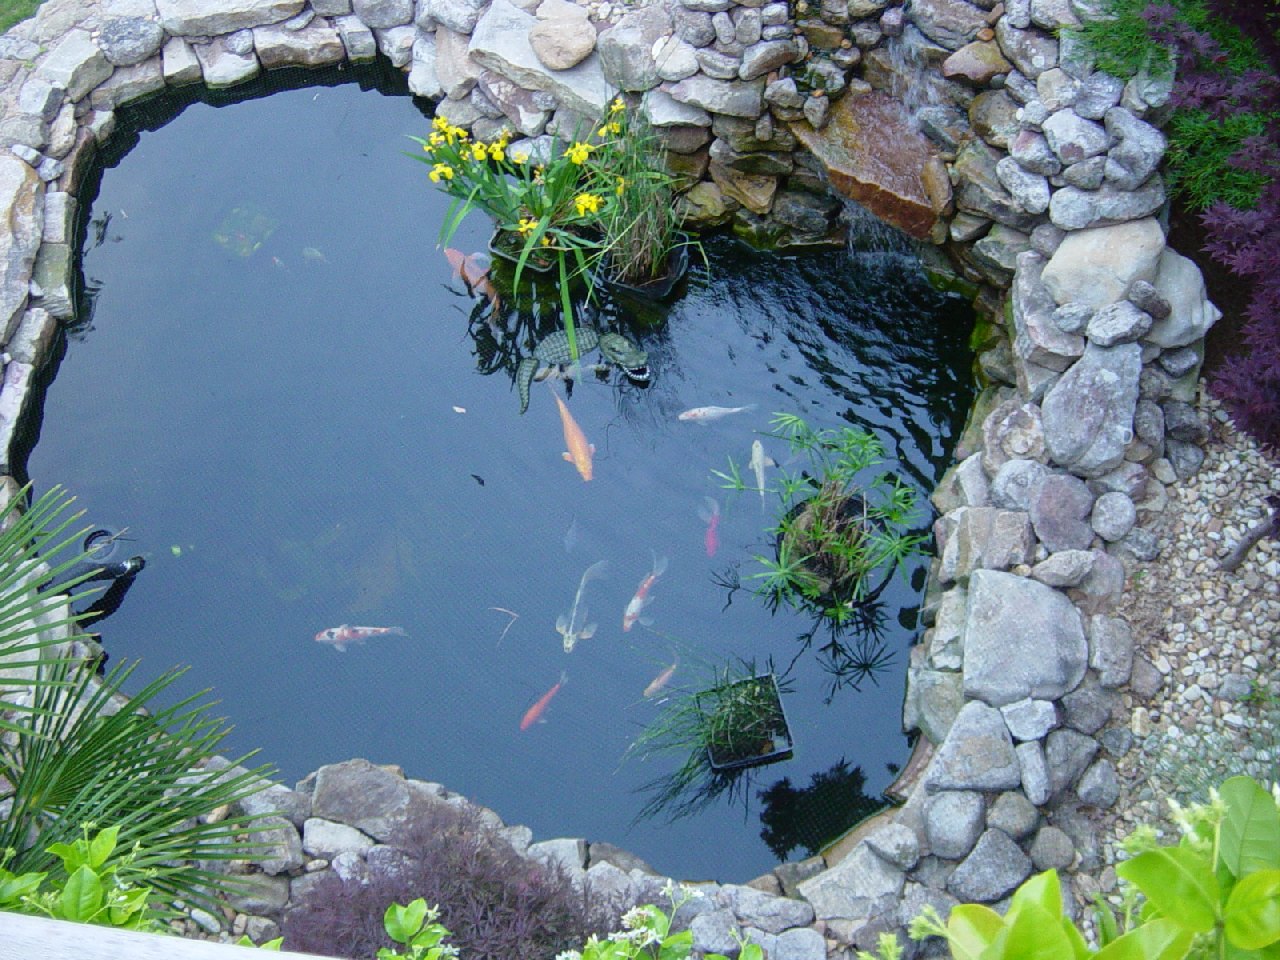 garden pond